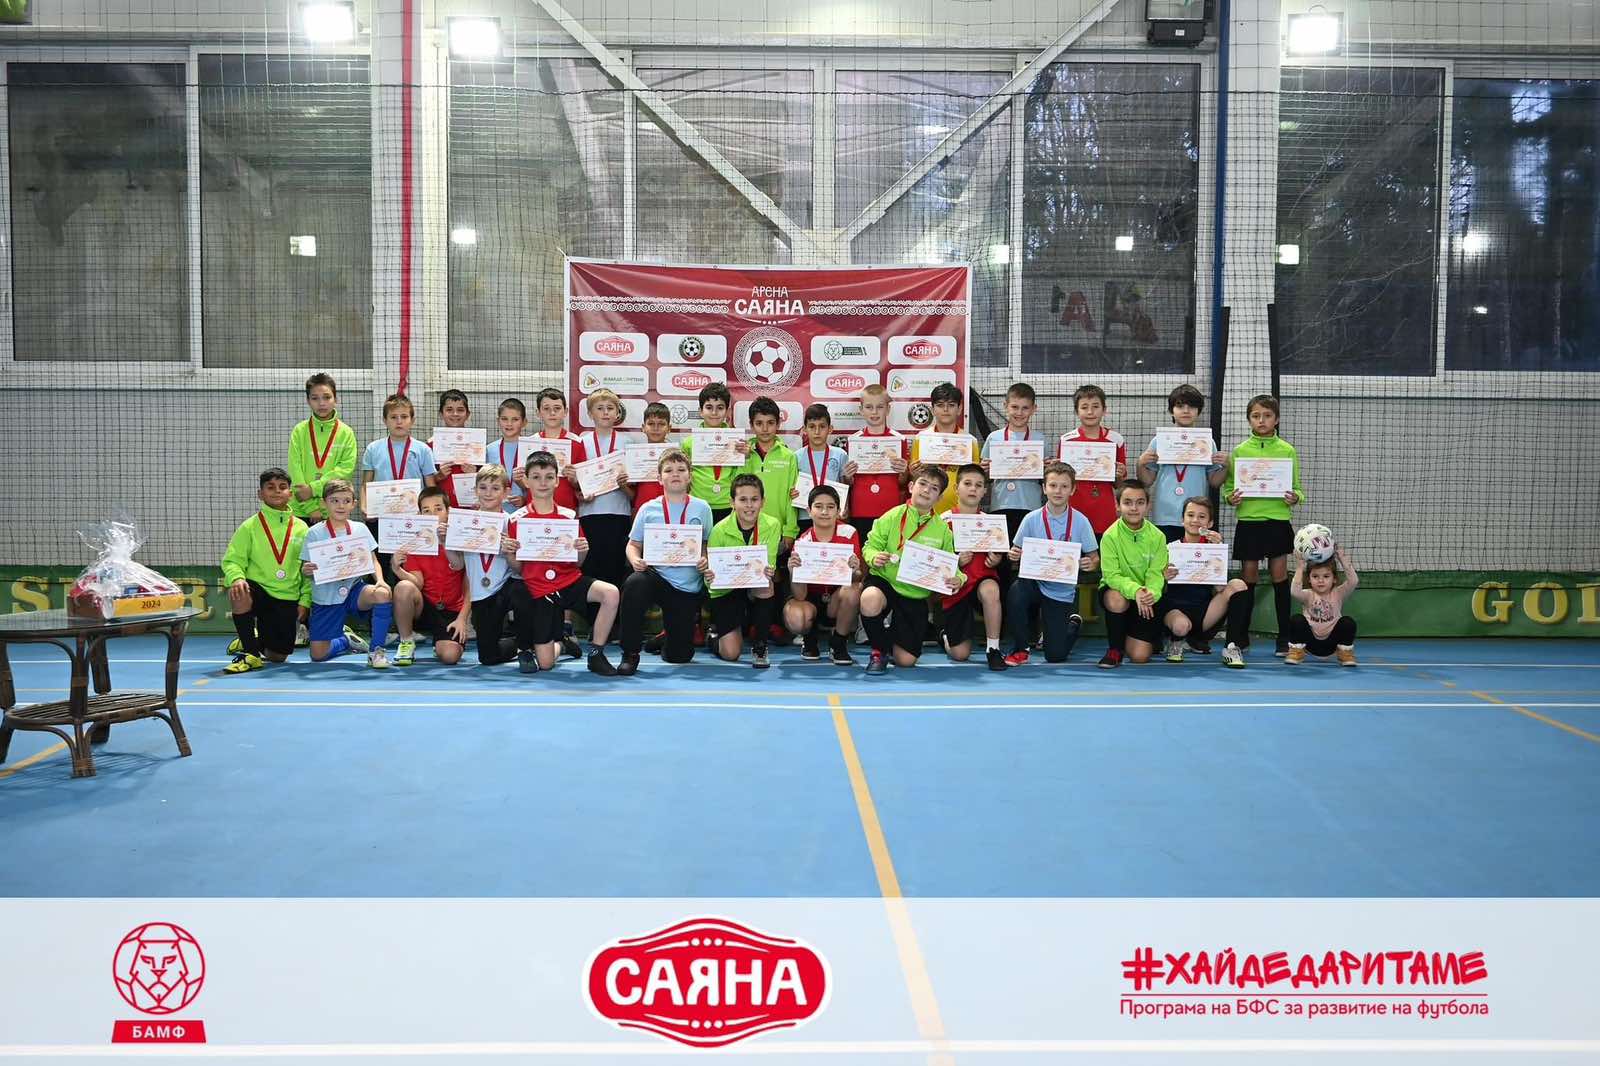 Отборът на Начално училище Яне Сандански в Разлог спечели общинския етап на детски турнир по мини футбол Арена Саяна